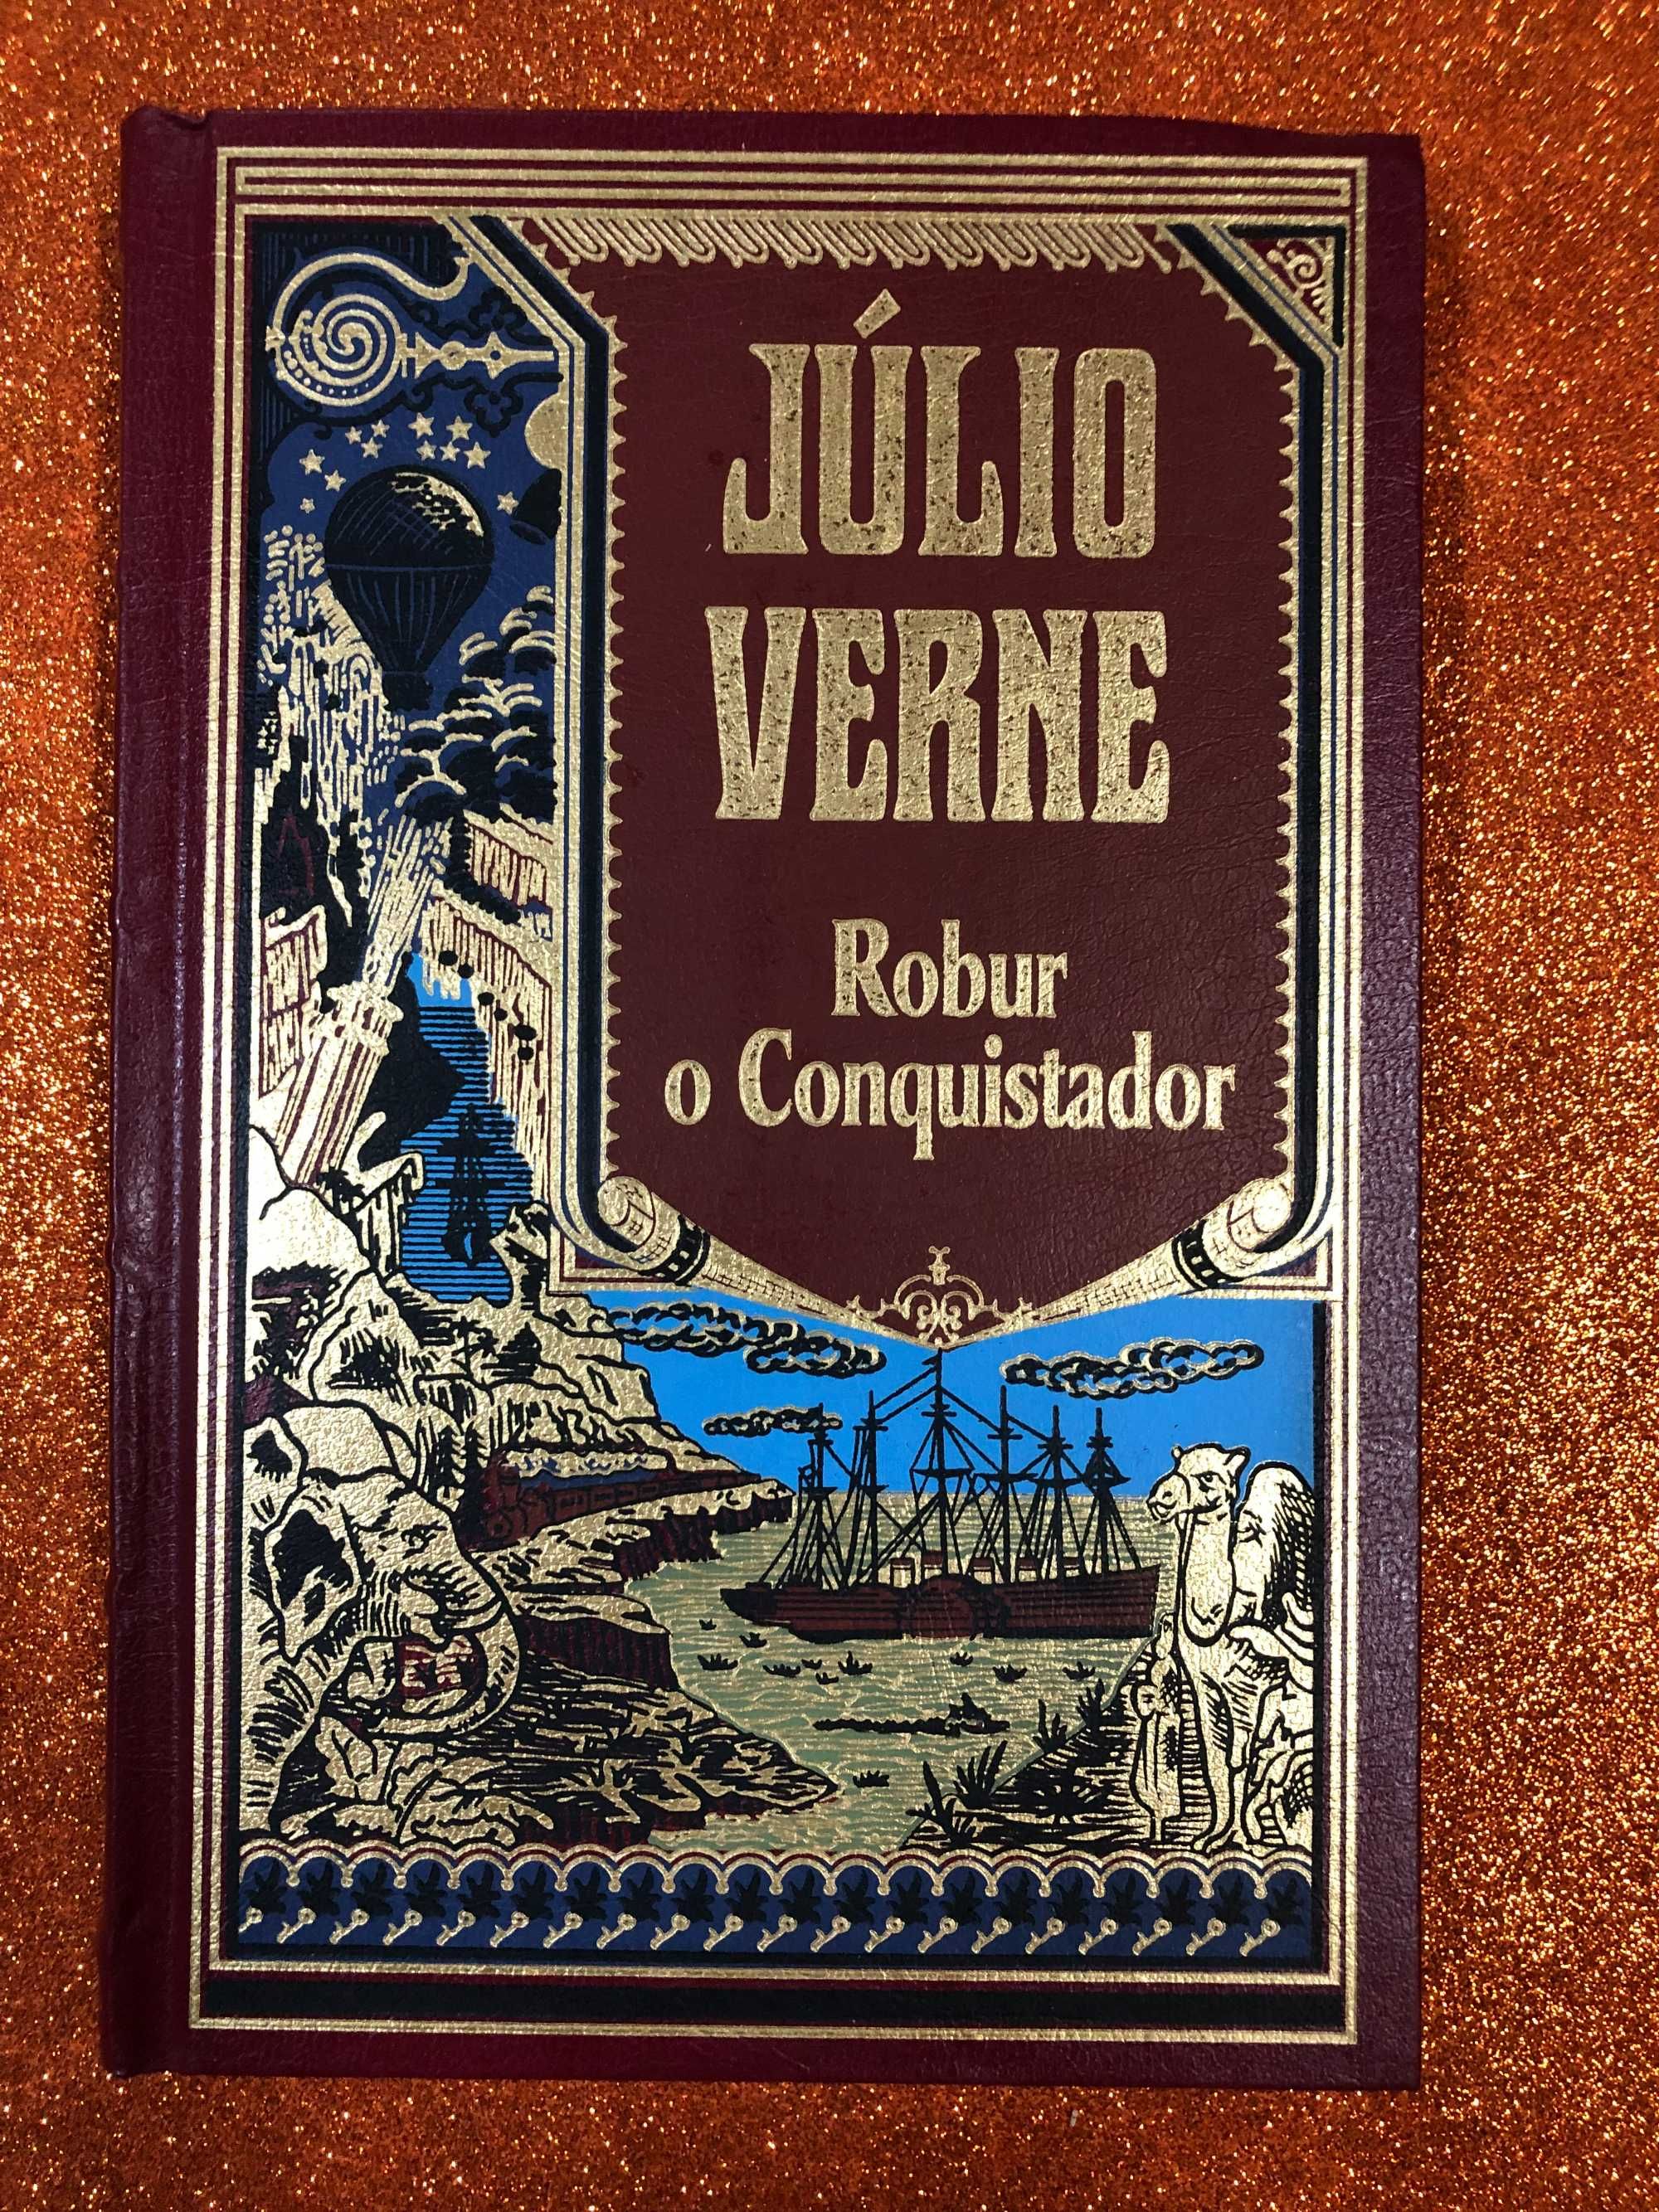 Robur o conquistador - Júlio Verne